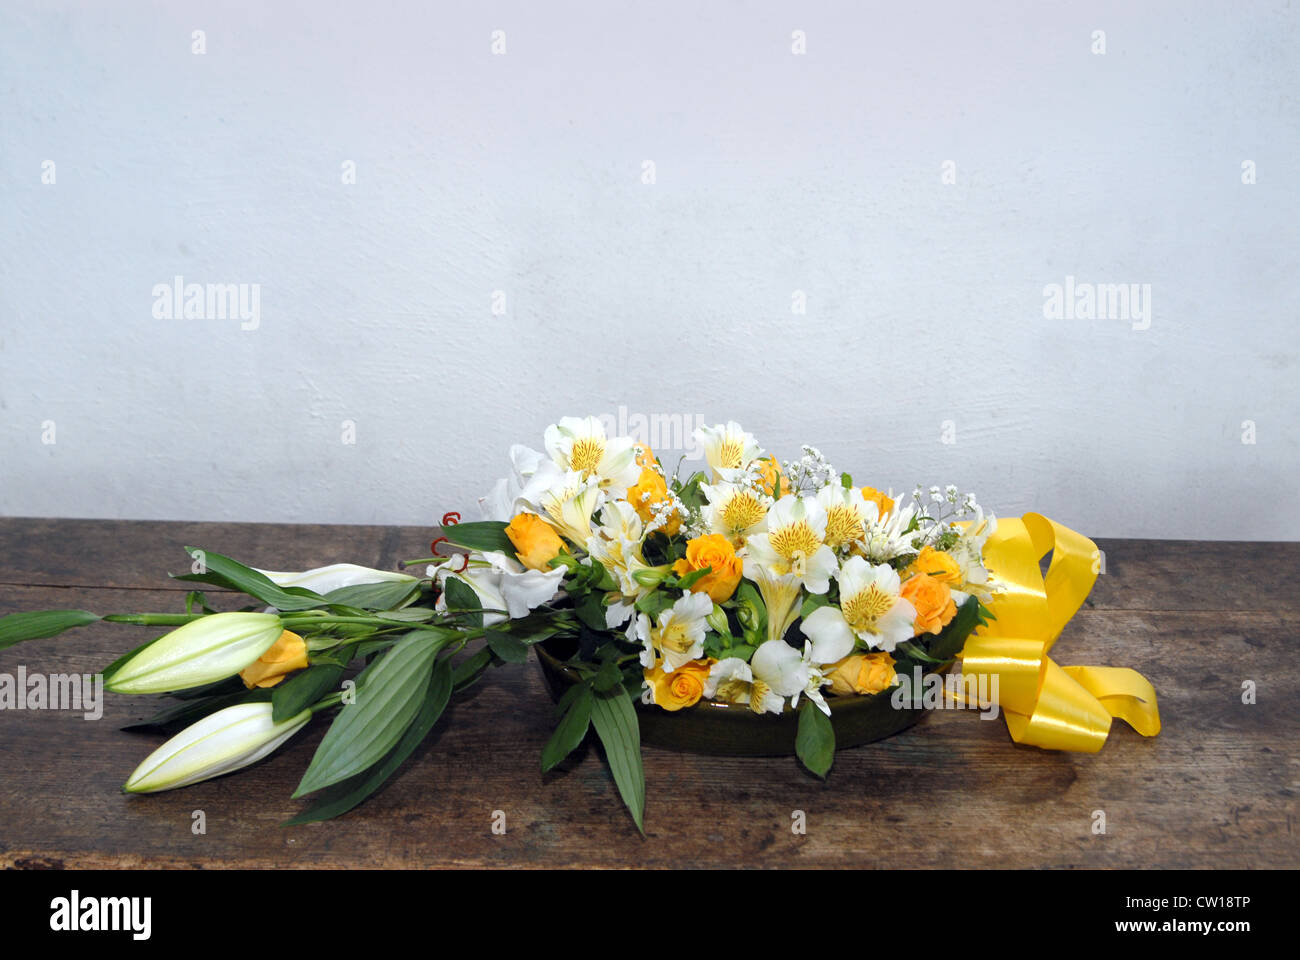 Un bouquet de fleurs jaune/or Selworthy en Église, Somerset, UK l'église pour une célébration de mariage. Banque D'Images